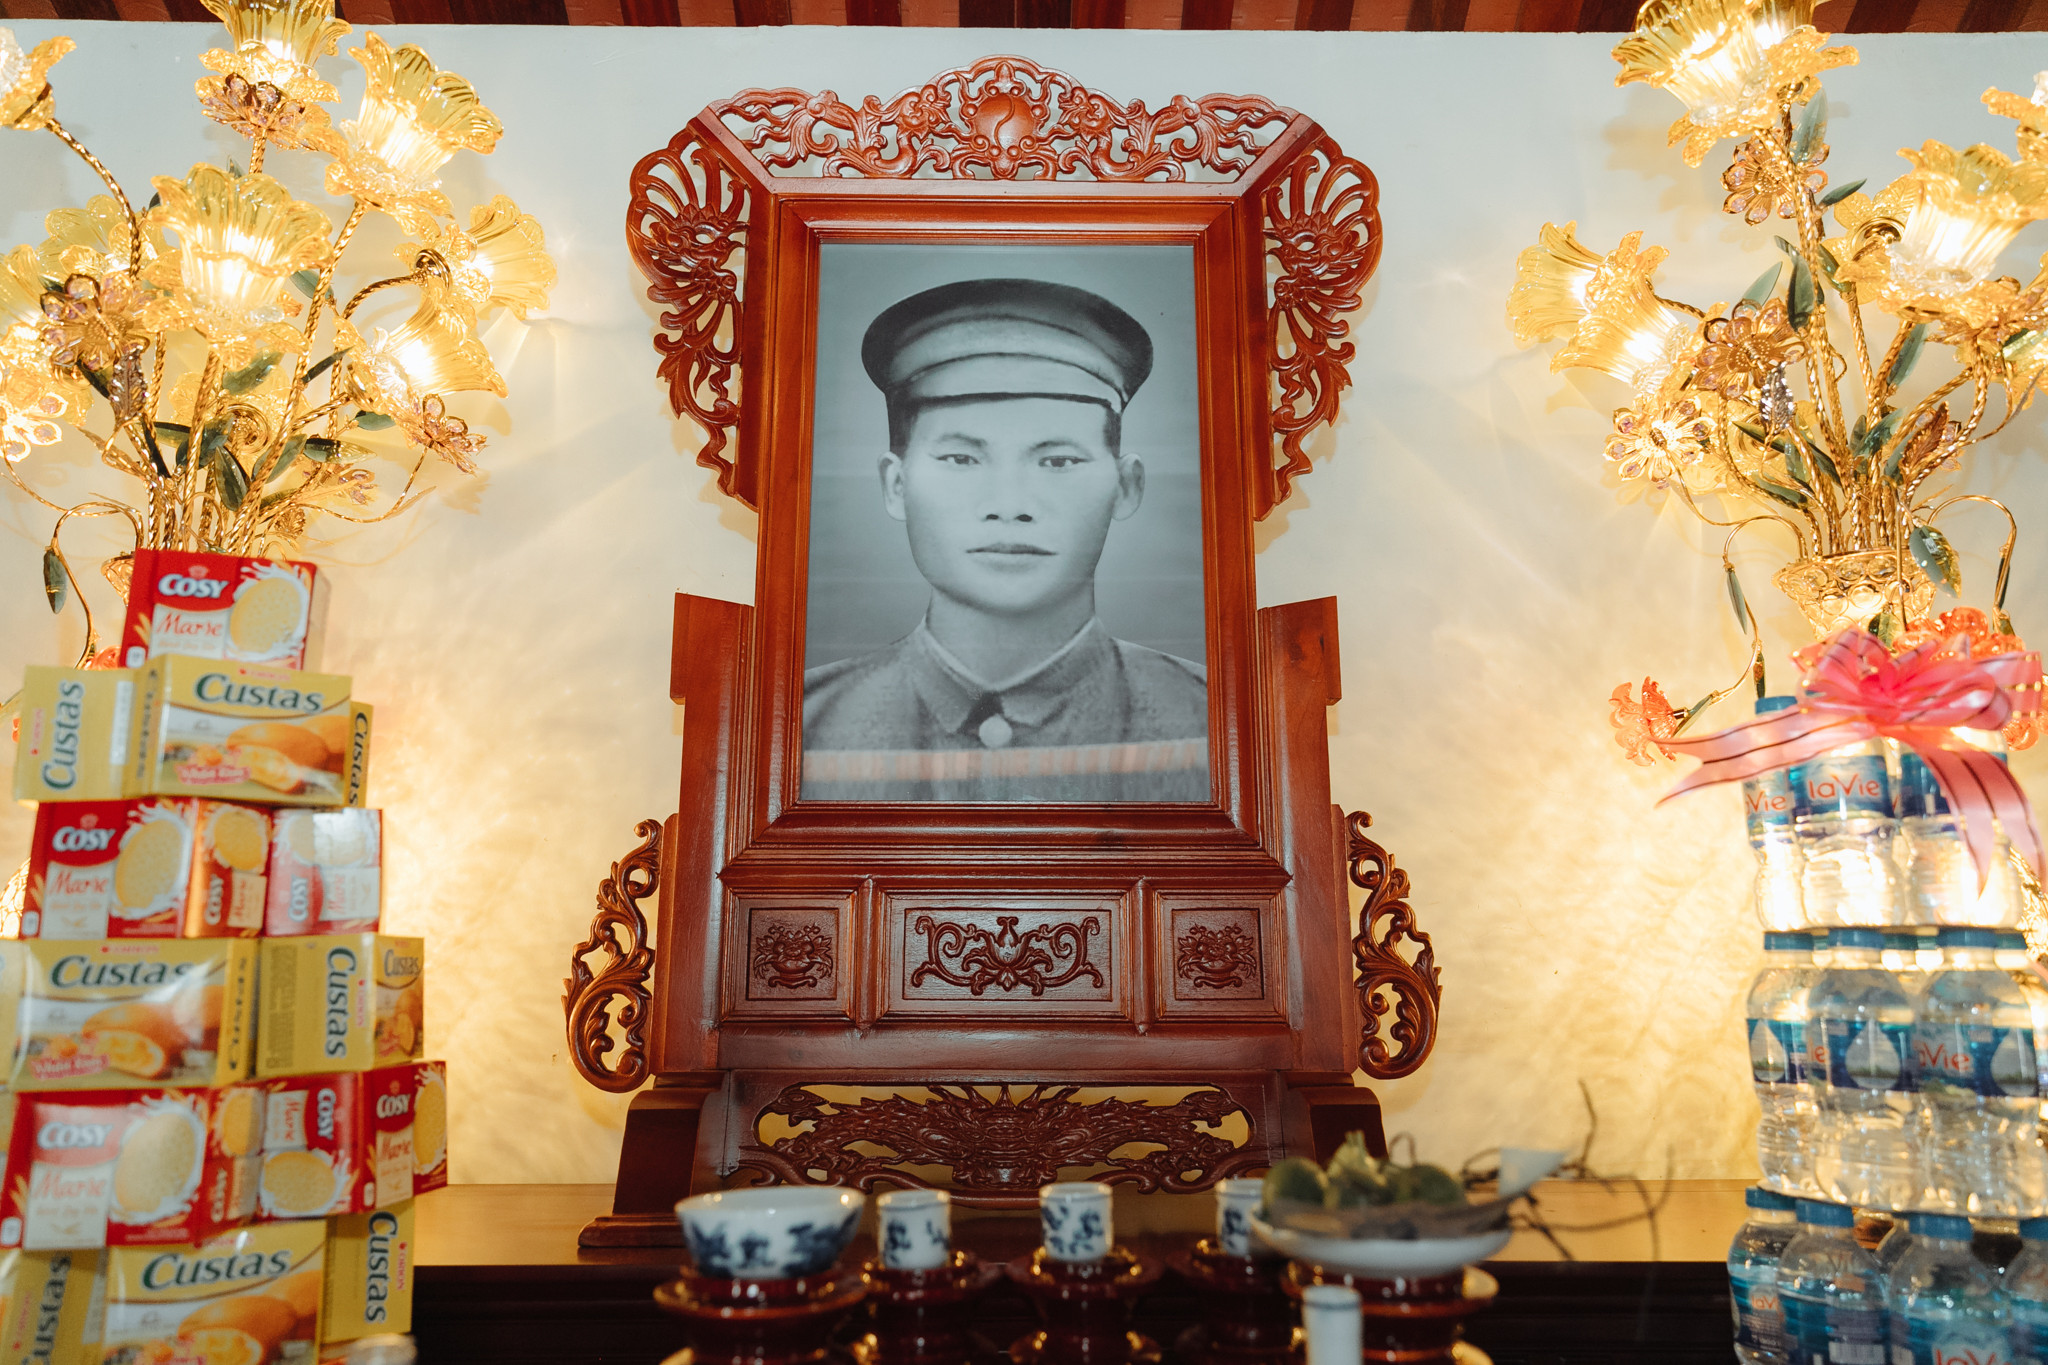 Đồng chí Phùng Chí Kiên, tên thật là Nguyễn Vĩ, sinh ngày 18 tháng 5 năm 1901, tại xã Diễn Yên, huyện Diễn Châu, tỉnh Nghệ An, nguyên Ủy viên Ban Thường vụ Trung ương Đảng, khóa I, là người chiến sỹ cộng sản kiên trung, mẫu mực, toàn tâm phấn đấu cho sự nghiệp cách mạng vô sản ở Việt Nam, nhà chính trị, quân sự song toàn. Ngày 23 tháng 9 năm 1947 đồng chí Phùng Chí Kiên đã được Chủ tịch Hồ Chí Minh ký Sắc lệnh số 89/SL truy phong hàm cấp tướng đầu tiên trong lịch sử Quân đội nhân dân Việt Nam. Ảnh: Đức Anh